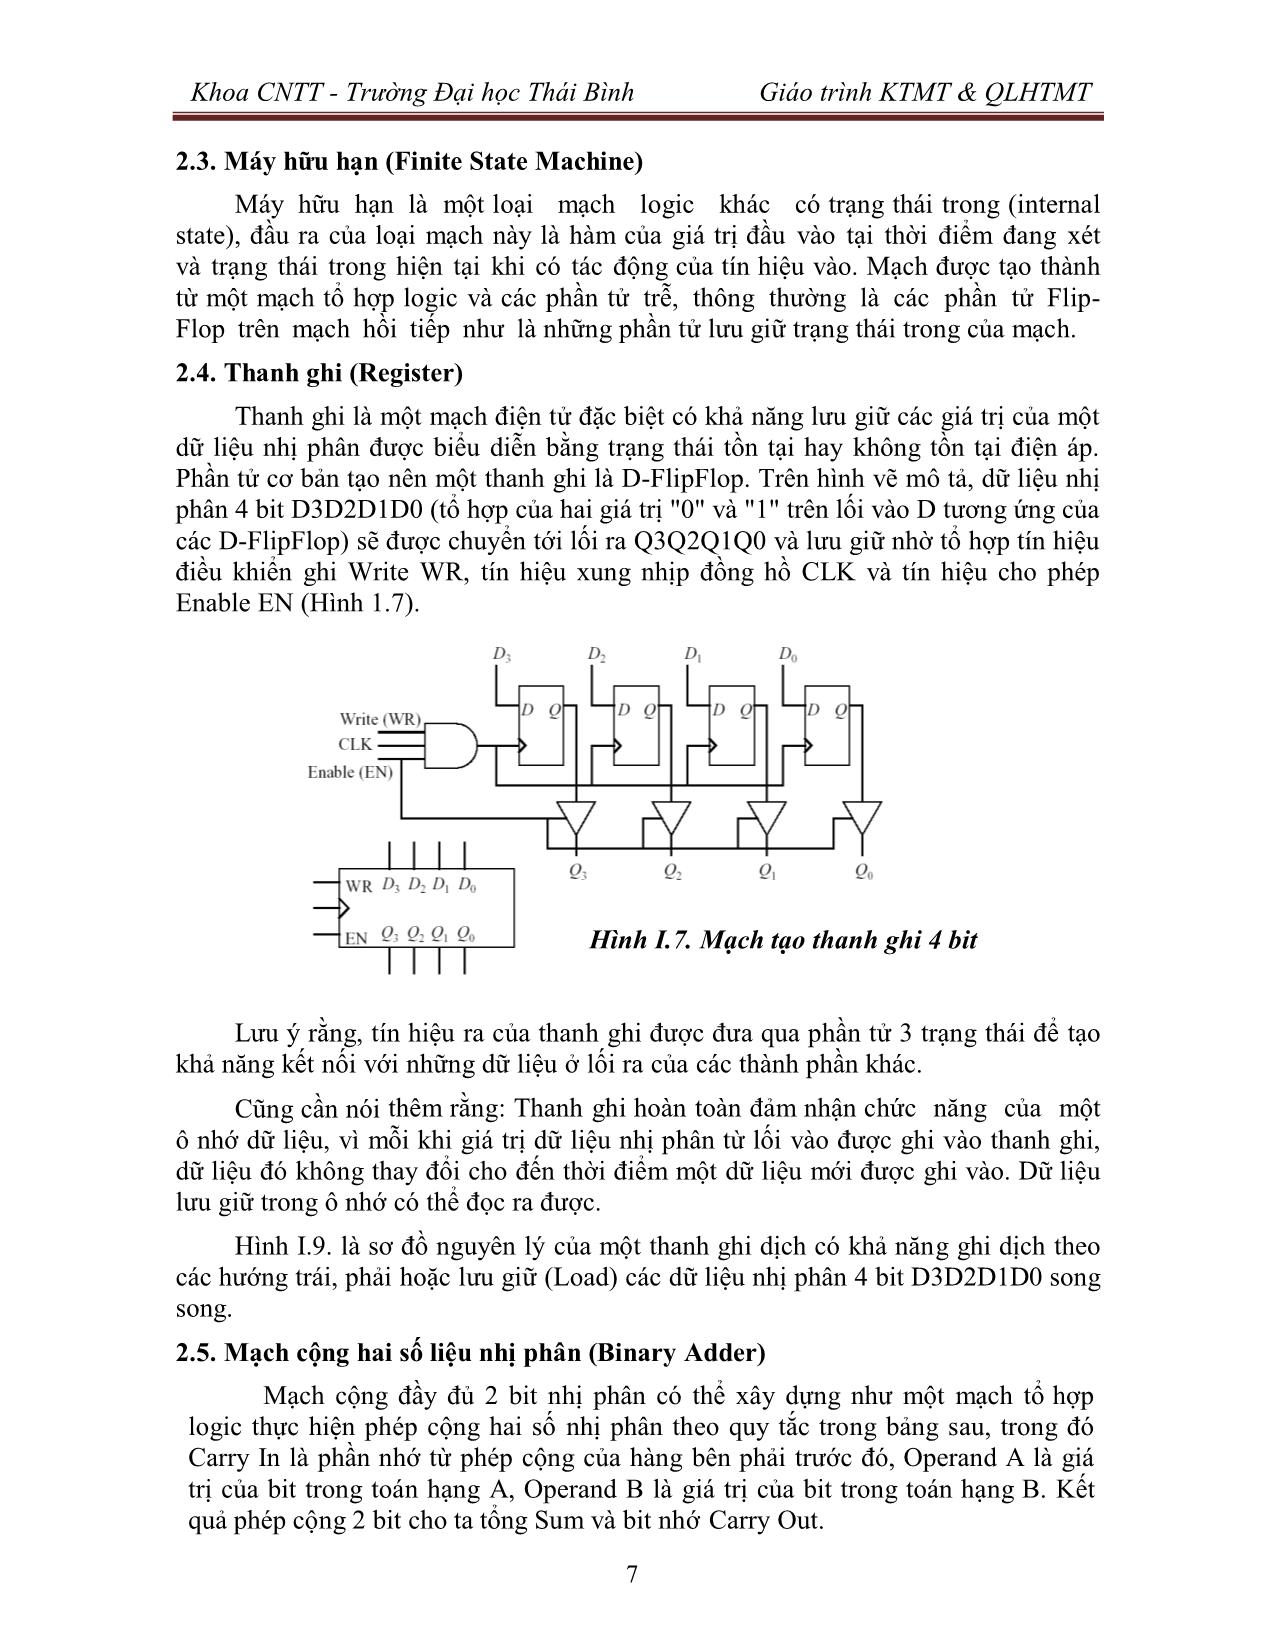 Giáo trình Kiến trúc máy tính & Quản lý hệ thống máy tính (Phần 1) trang 8